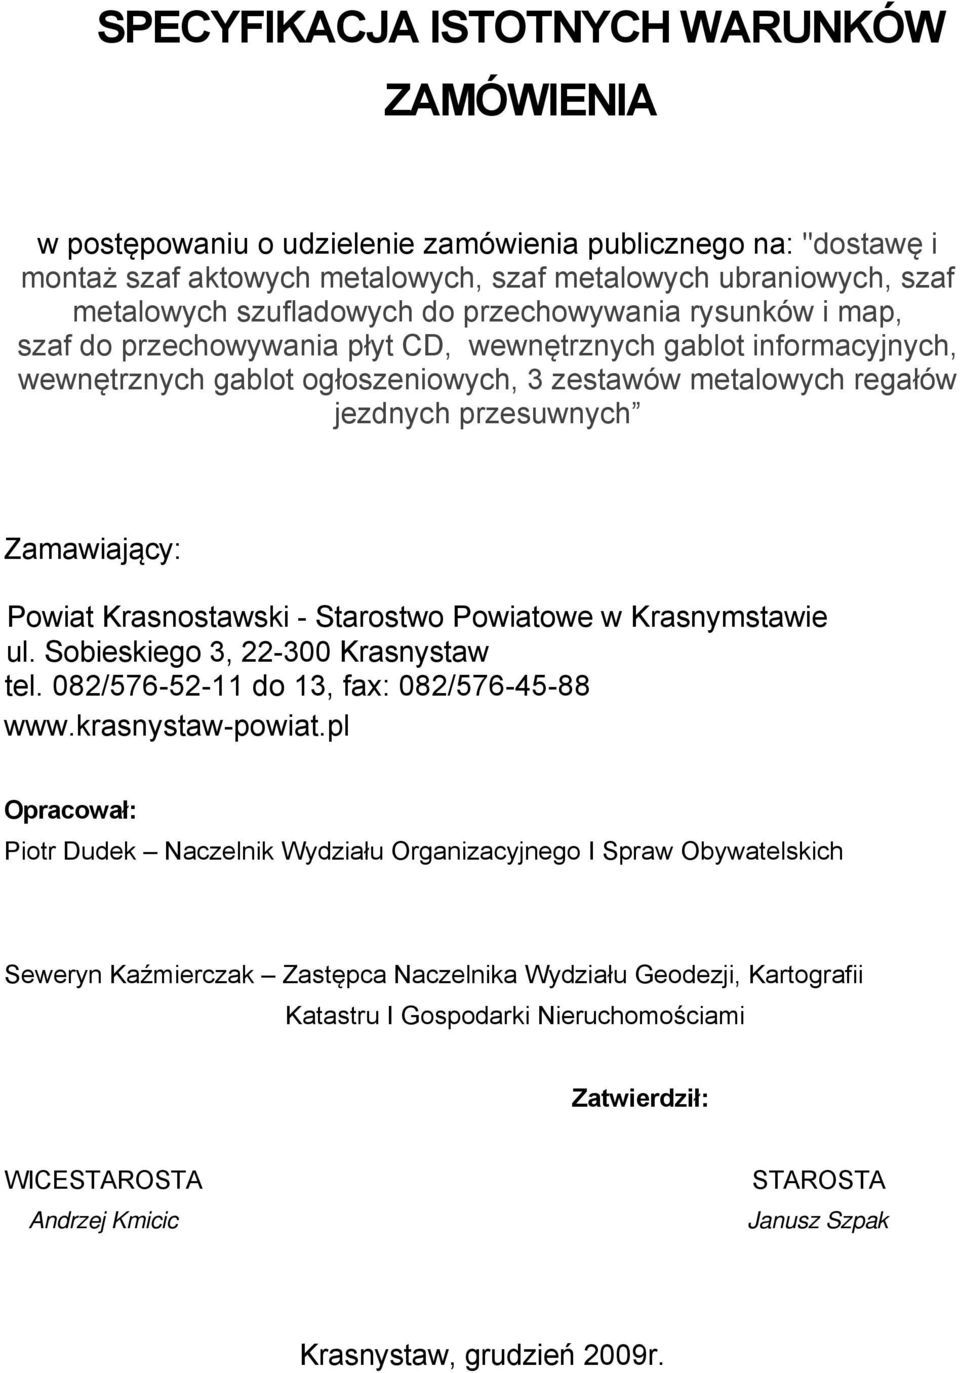 Zamawiający: Powiat Krasnostawski - Starostwo Powiatowe w Krasnymstawie ul. Sobieskiego 3, 22-300 Krasnystaw tel. 082/576-52-11 do 13, fax: 082/576-45-88 www.krasnystaw-powiat.